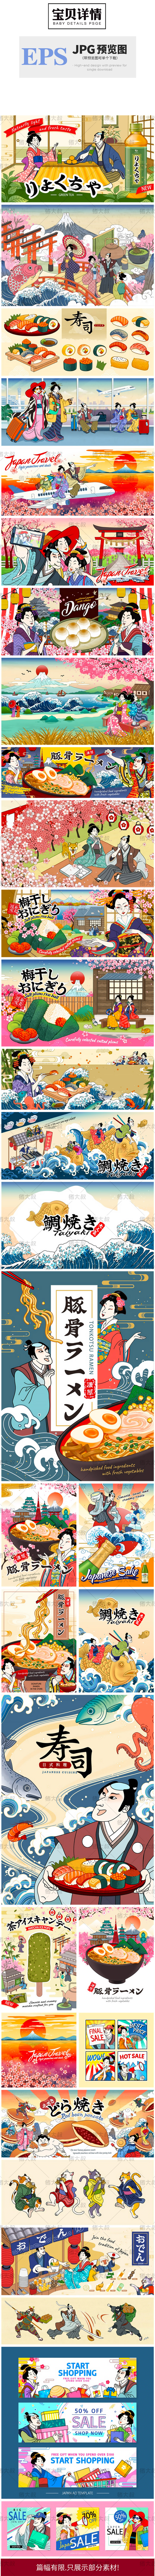 40款日本浮世绘美食旅游寿司鲷鱼烧拉面电商插图插画海报设计模板素材 图片素材 第2张